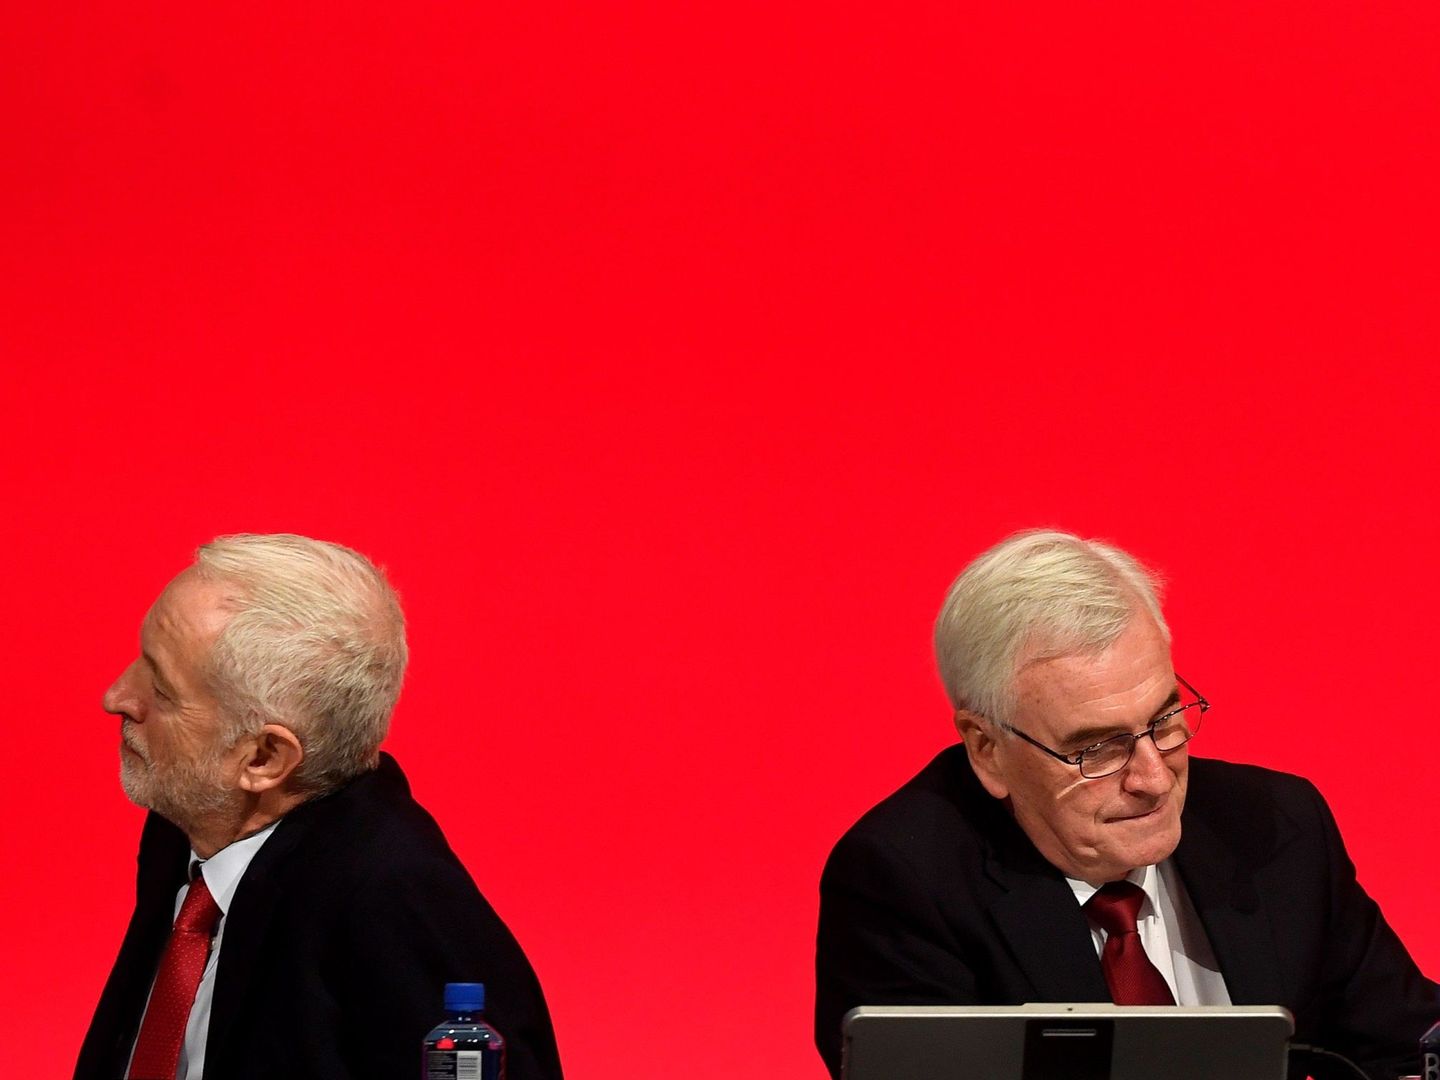 El congreso laborista ha puesto de manifiesto la división del partido. (Reuters)